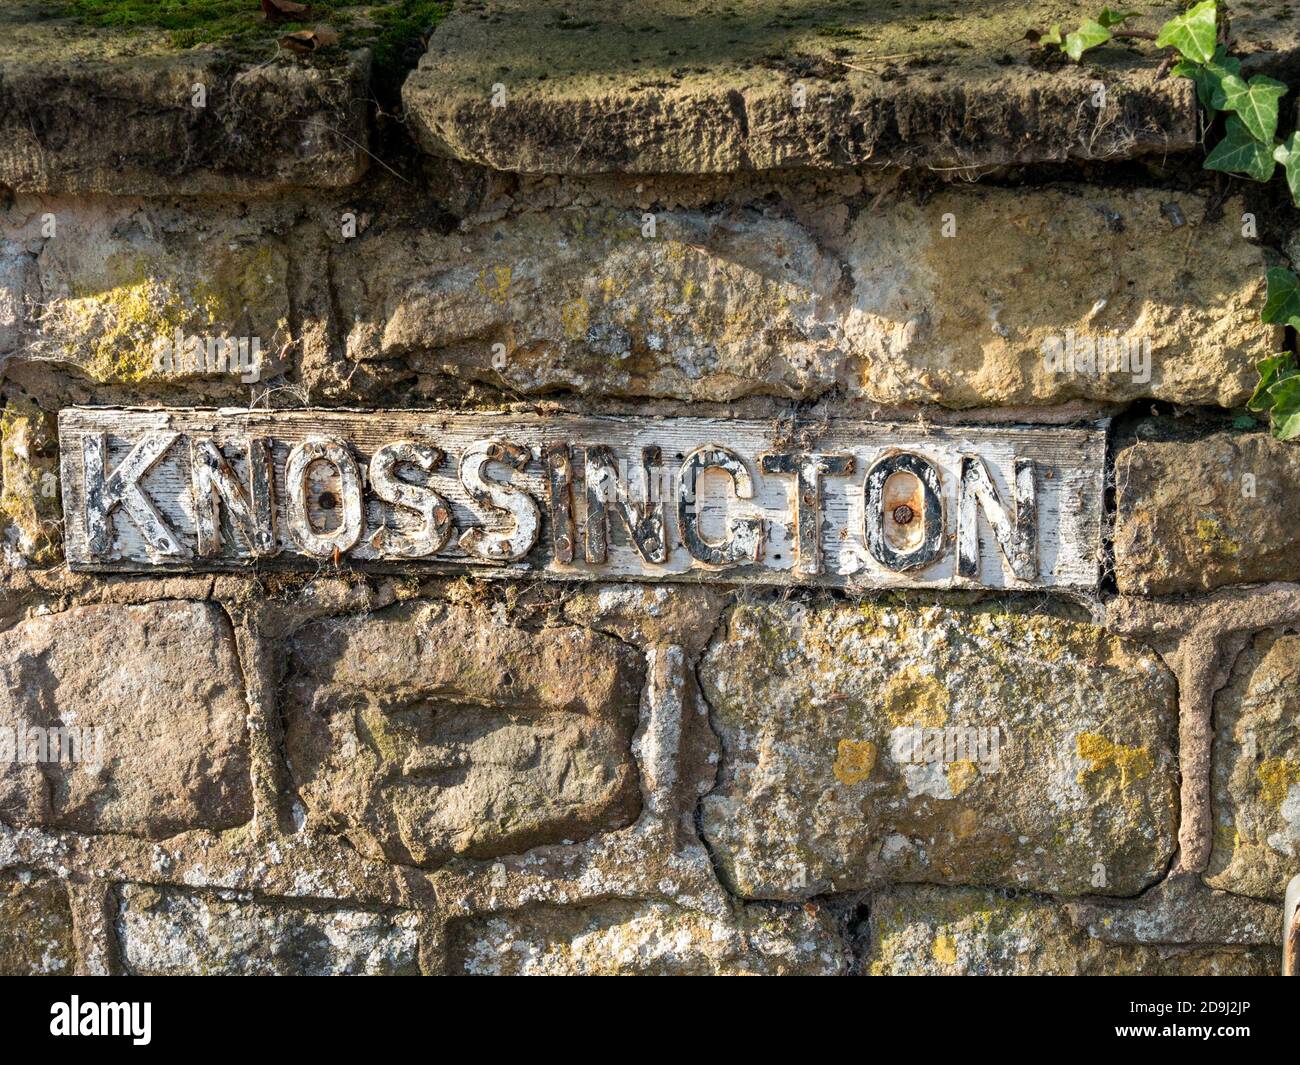 'Knossington' grazioso, vecchio segno di ghisa con scritta in rilievo in rilievo posto nella vecchia parete di pietra, Knossington, Leicestershire. Foto Stock